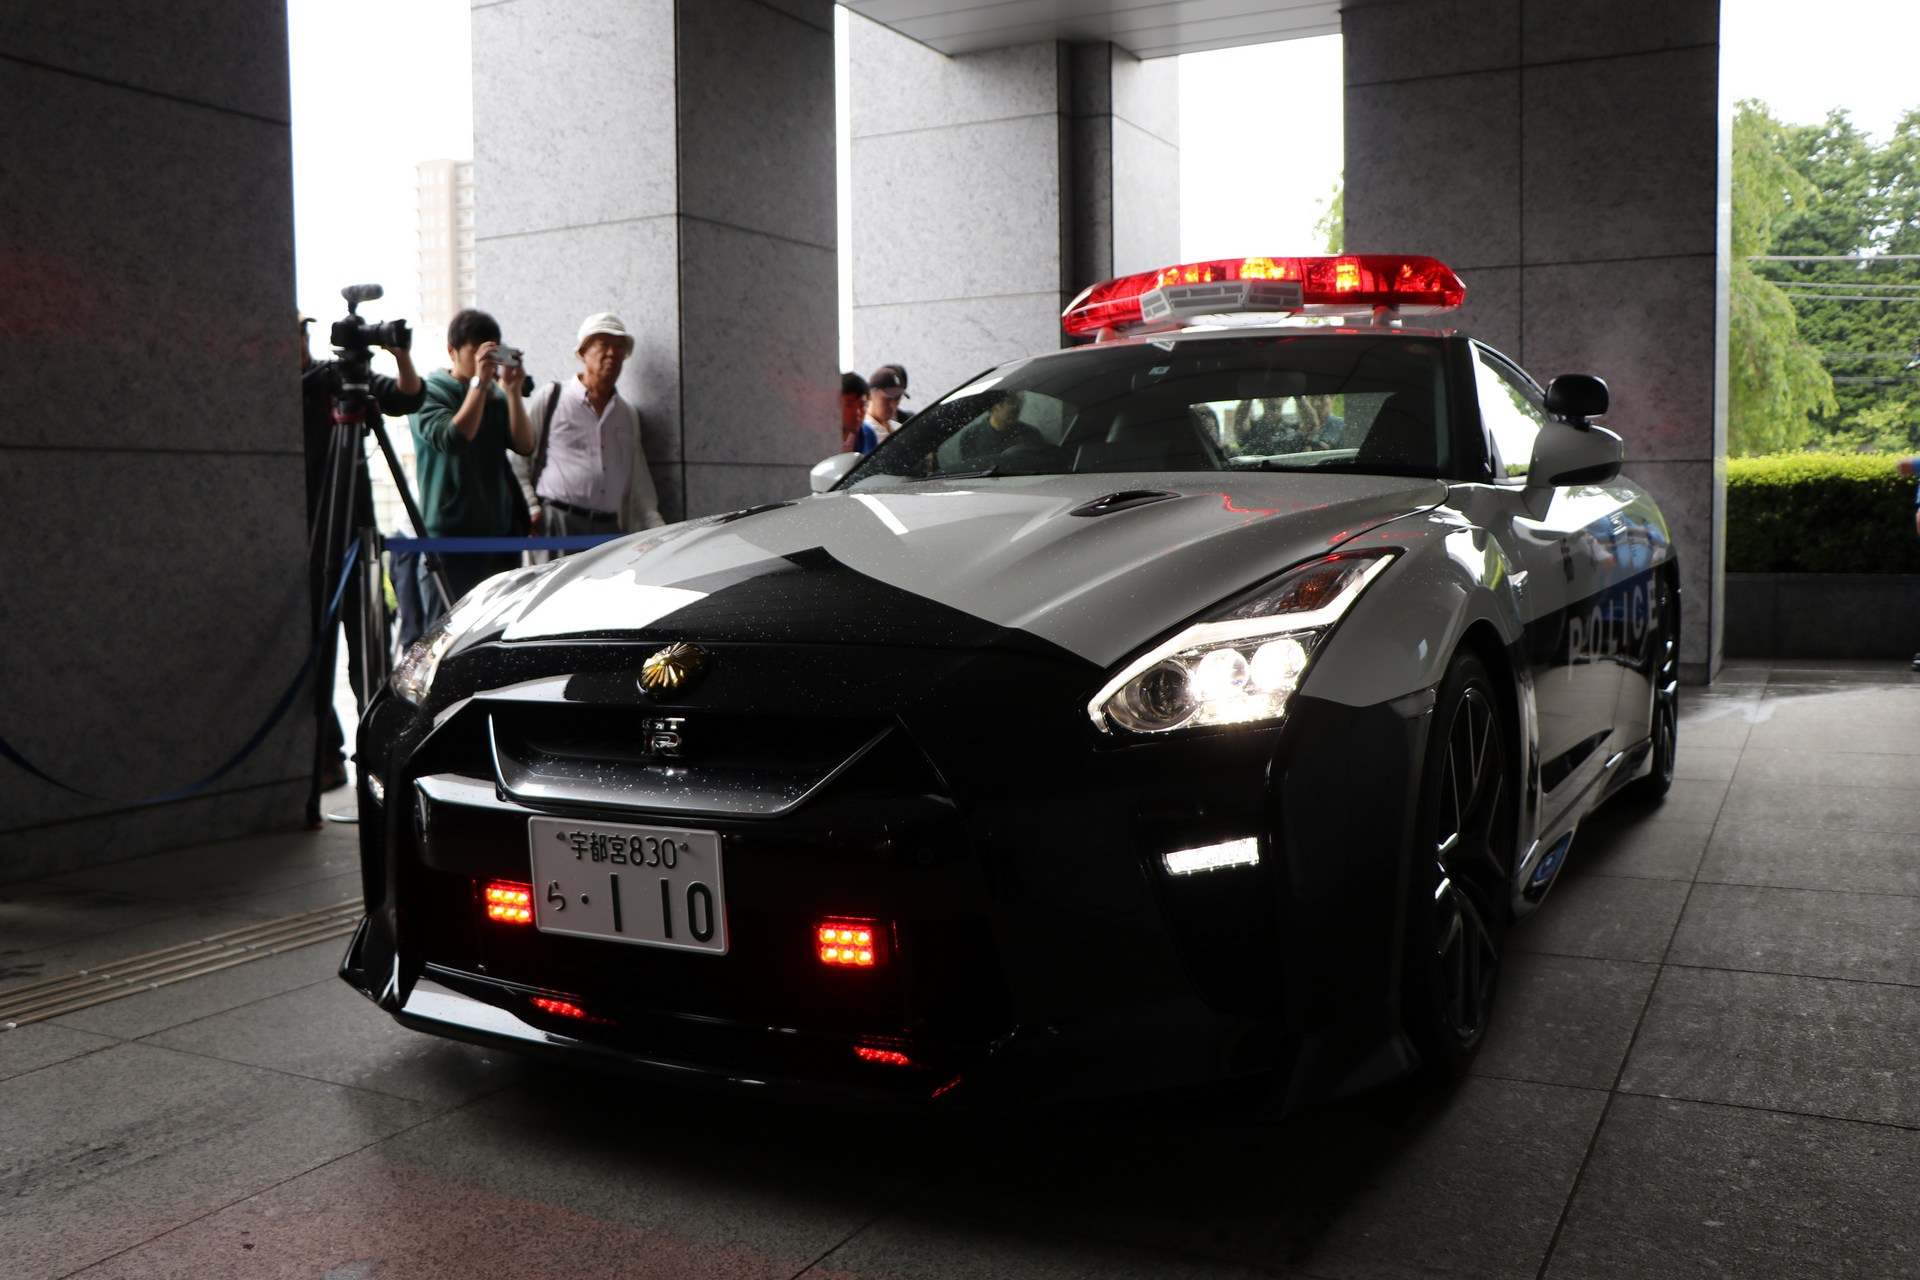 "بالصور" نيسان GT-R تدخل الخدمة رسميا بأسطول الشرطة اليابانية 13